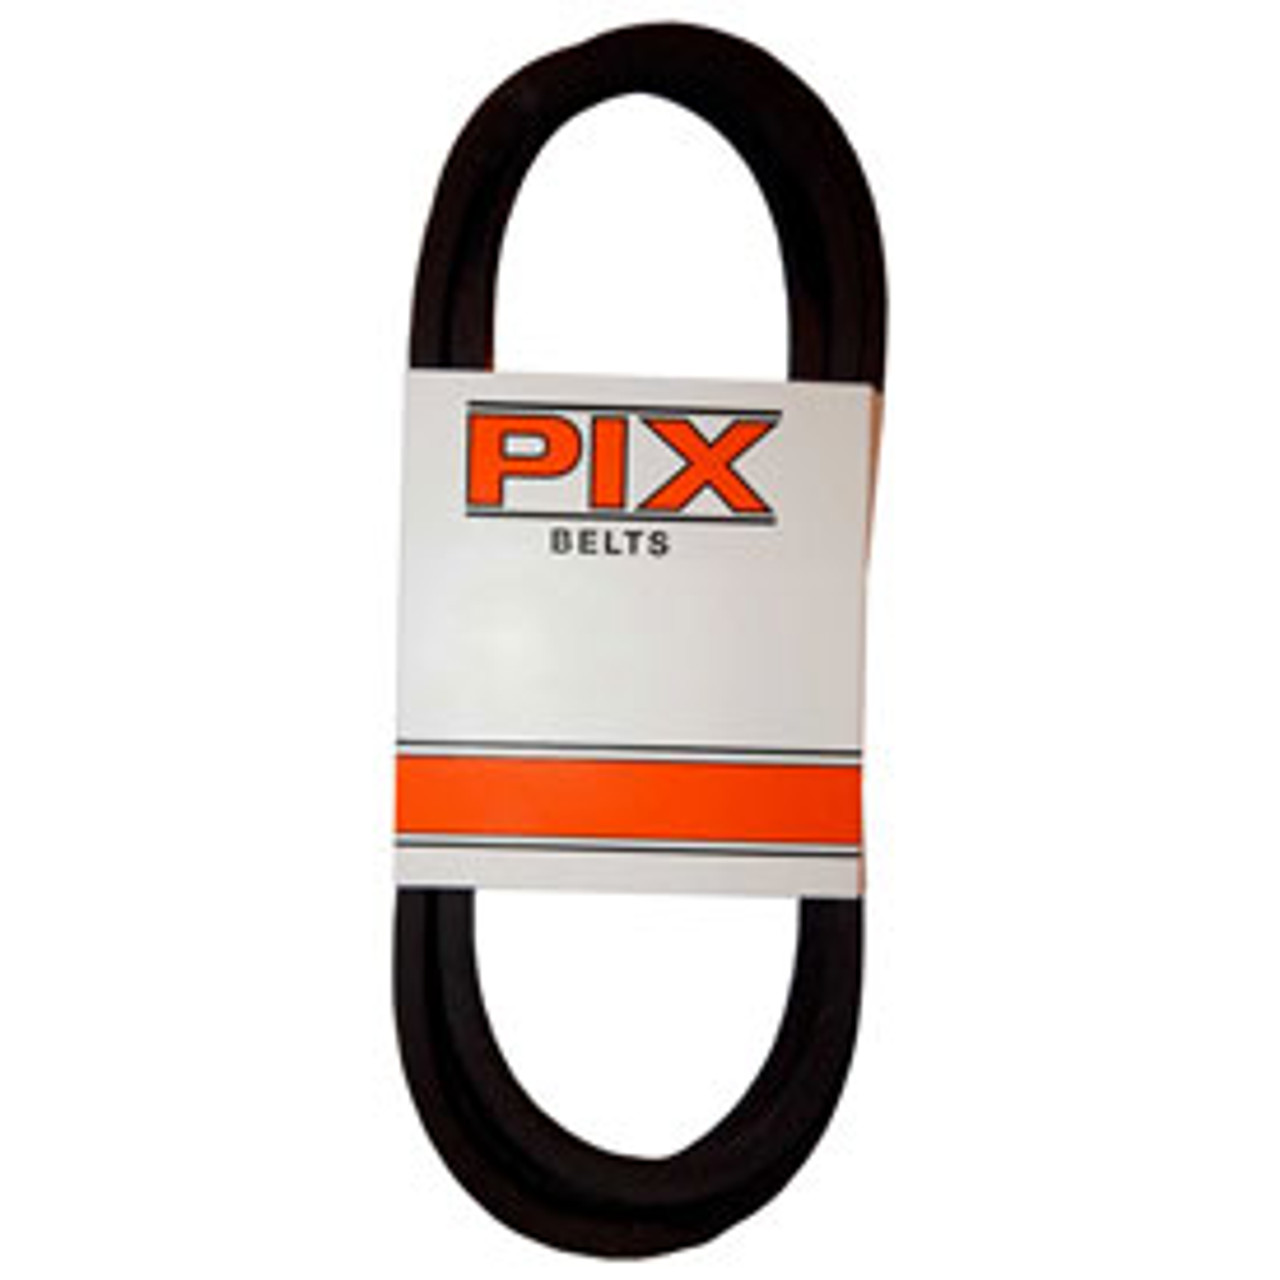 PIX B180 Classical V Belt  21/32" X 183"